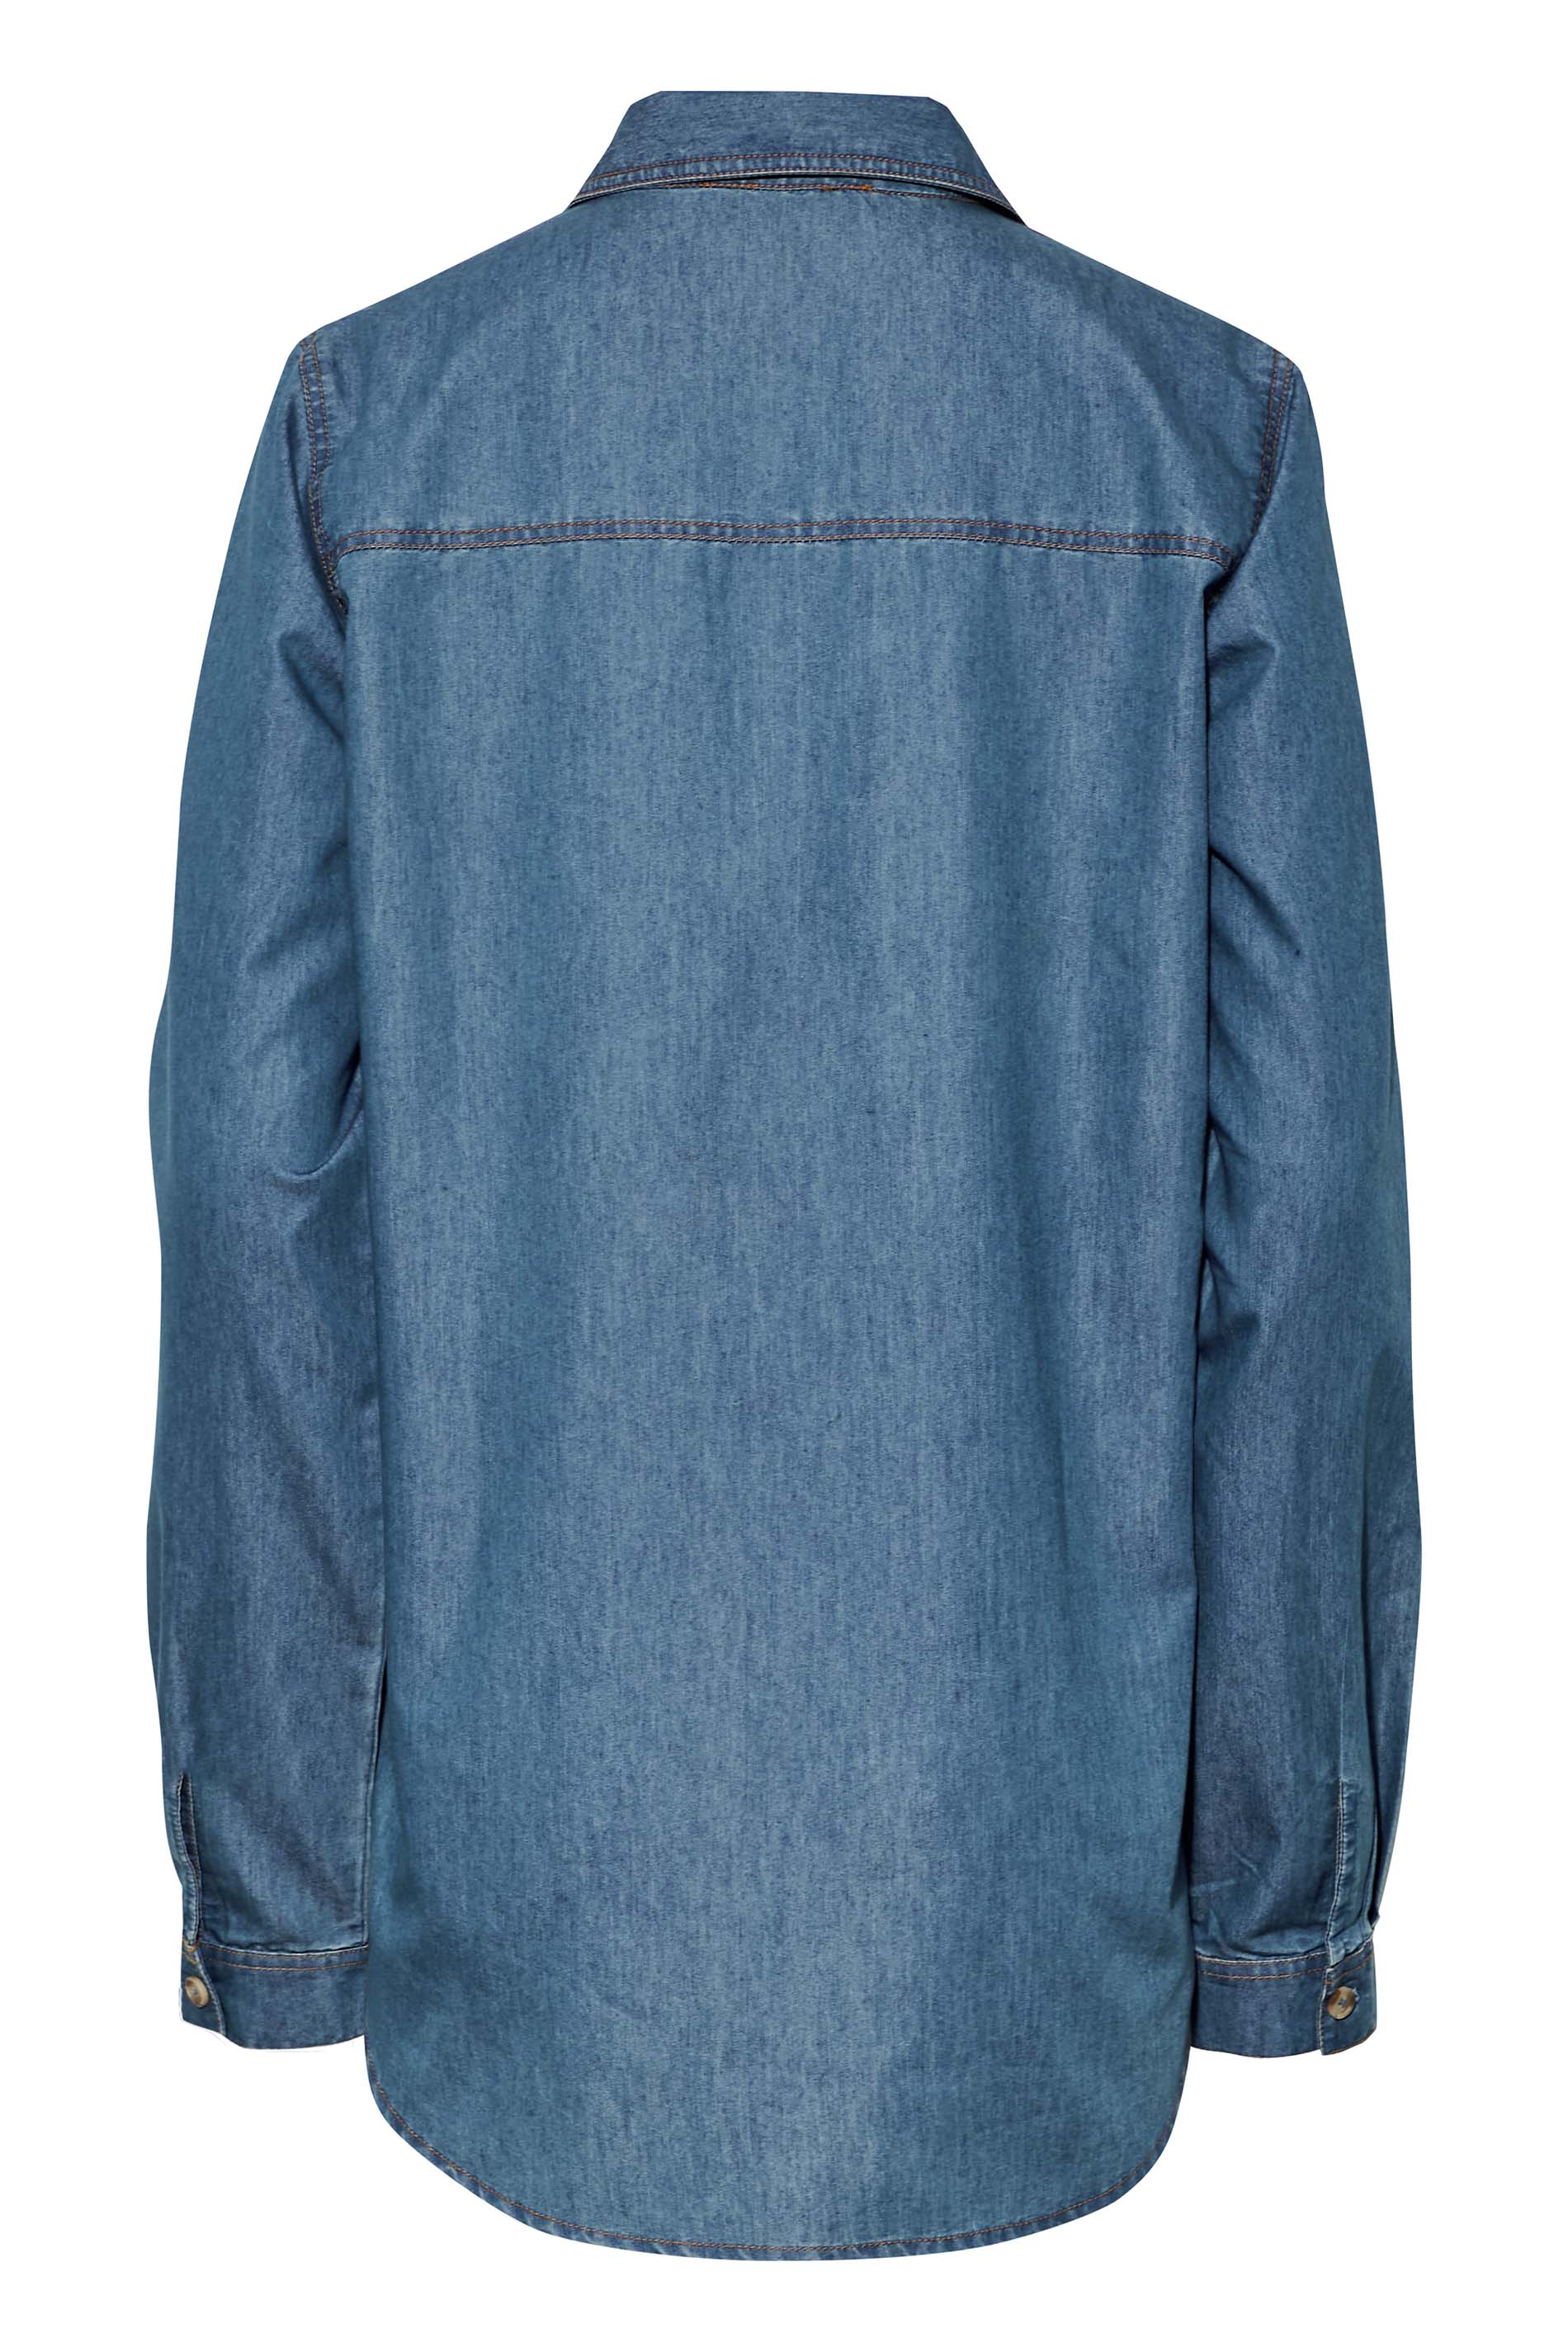 LTS Tall Women's Blue Western Denim Shirt | Long Tall Sally